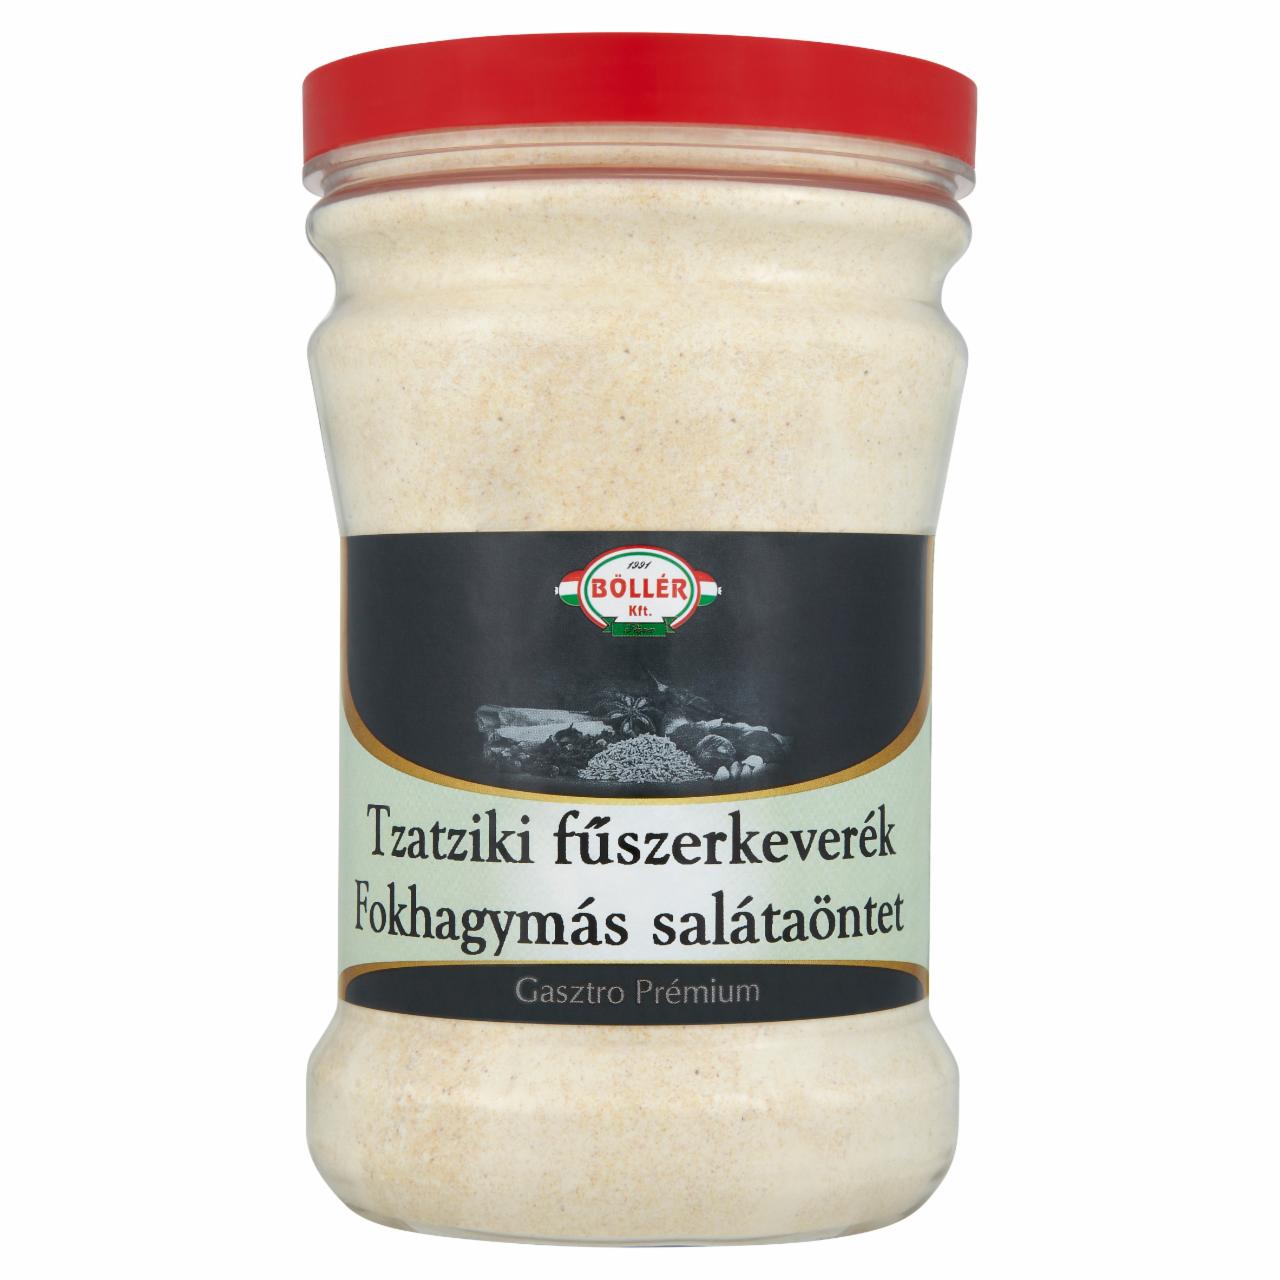 Képek - Böllér Gasztro Prémium tzatziki fűszerkeverék fokhagymás salátaöntet 1100 g